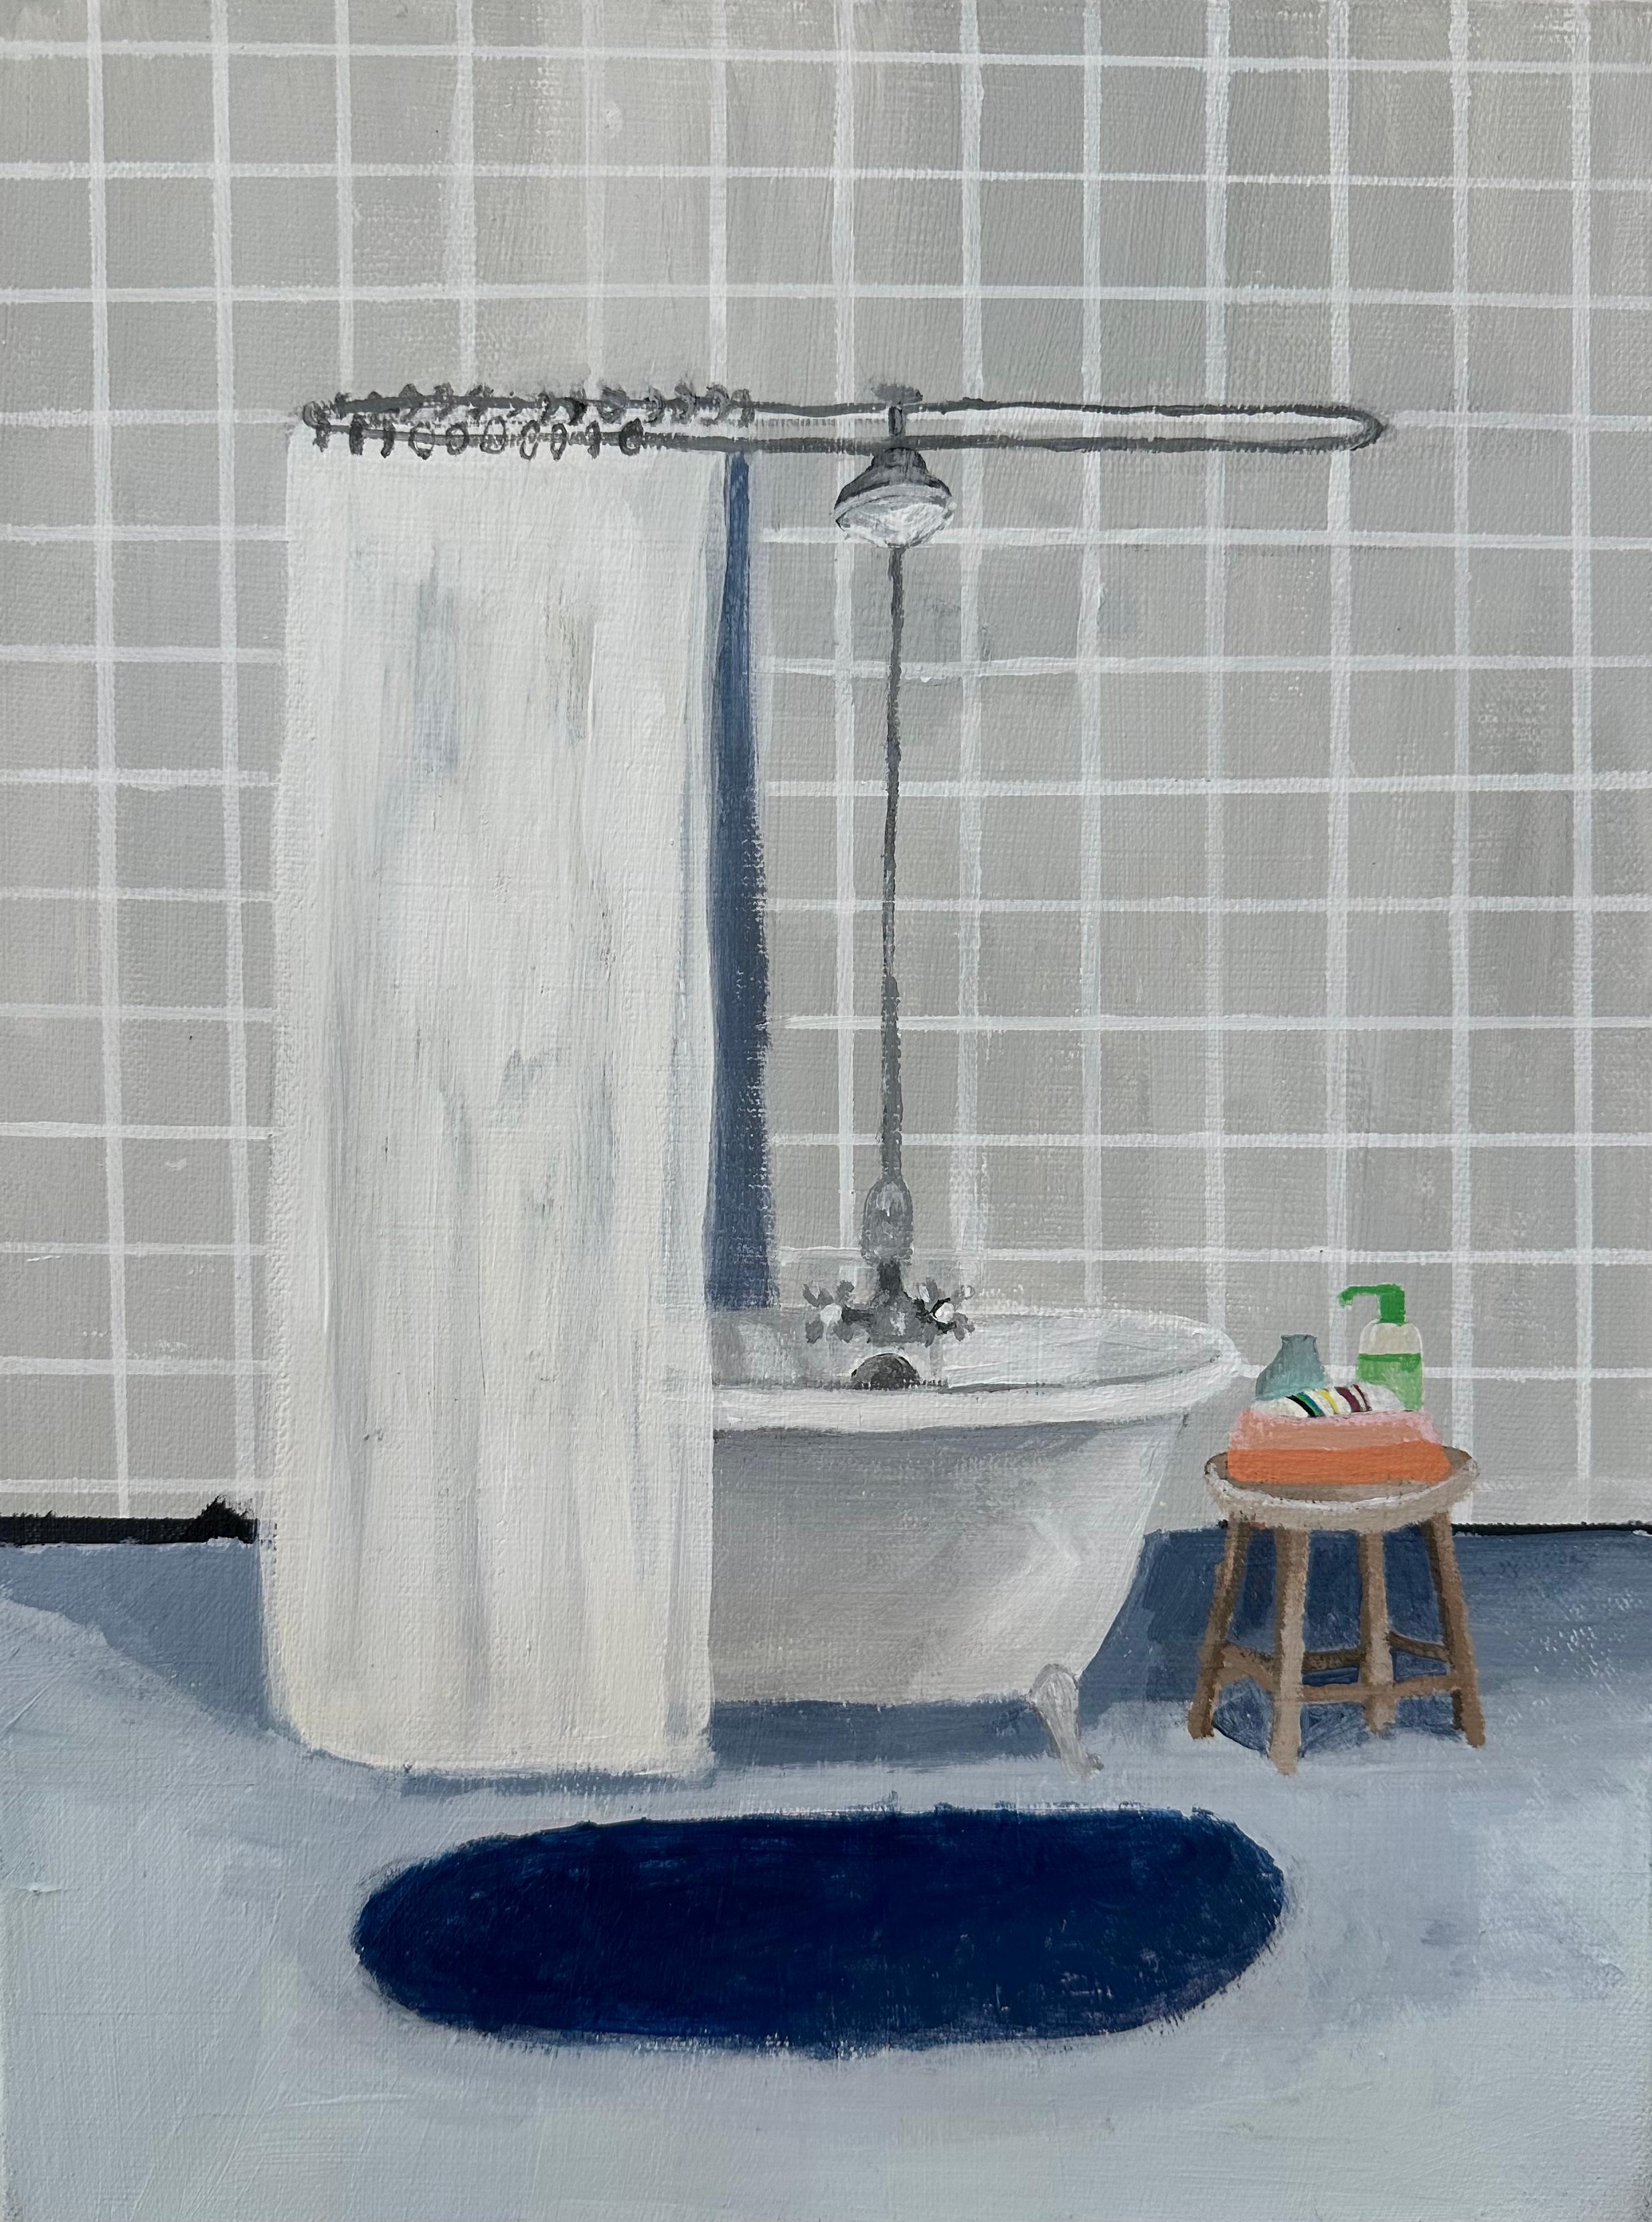 Polly Shindler Interior Painting – Graues Kachel-Bad, Badezimmer innen mit Kacheln, grüner Seife, kobaltblauer Teppich